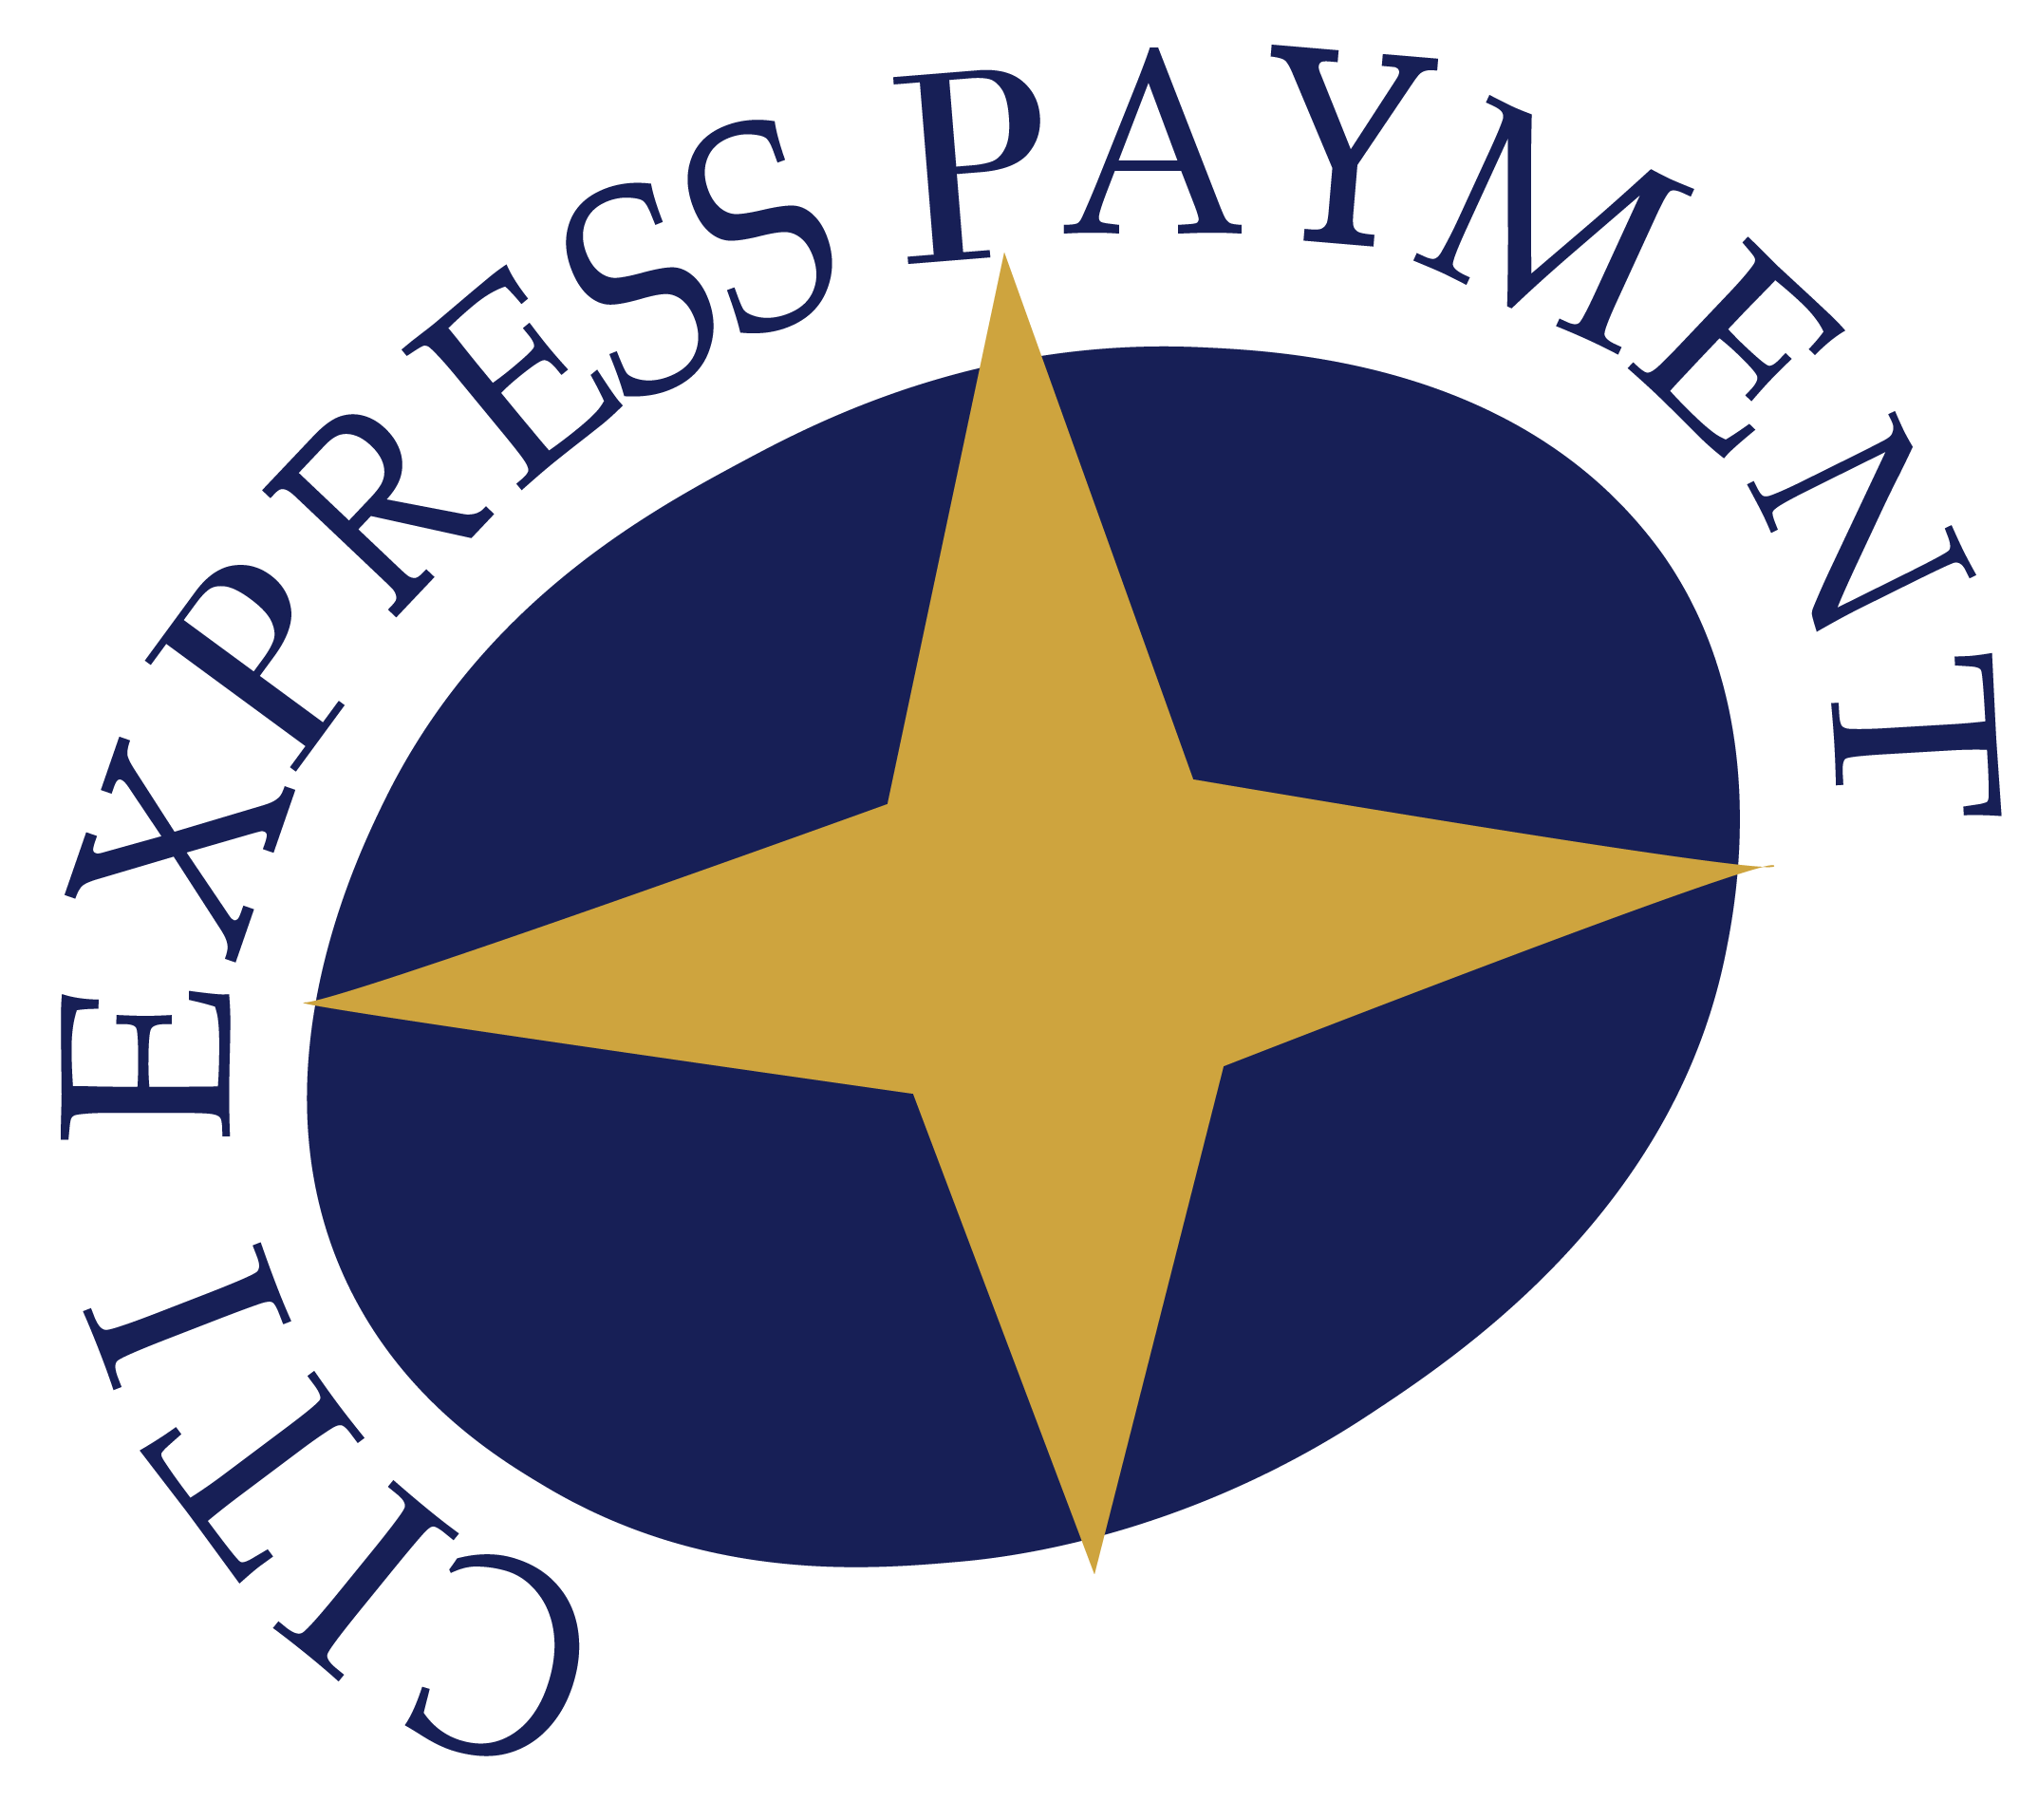 Citi Express Payment